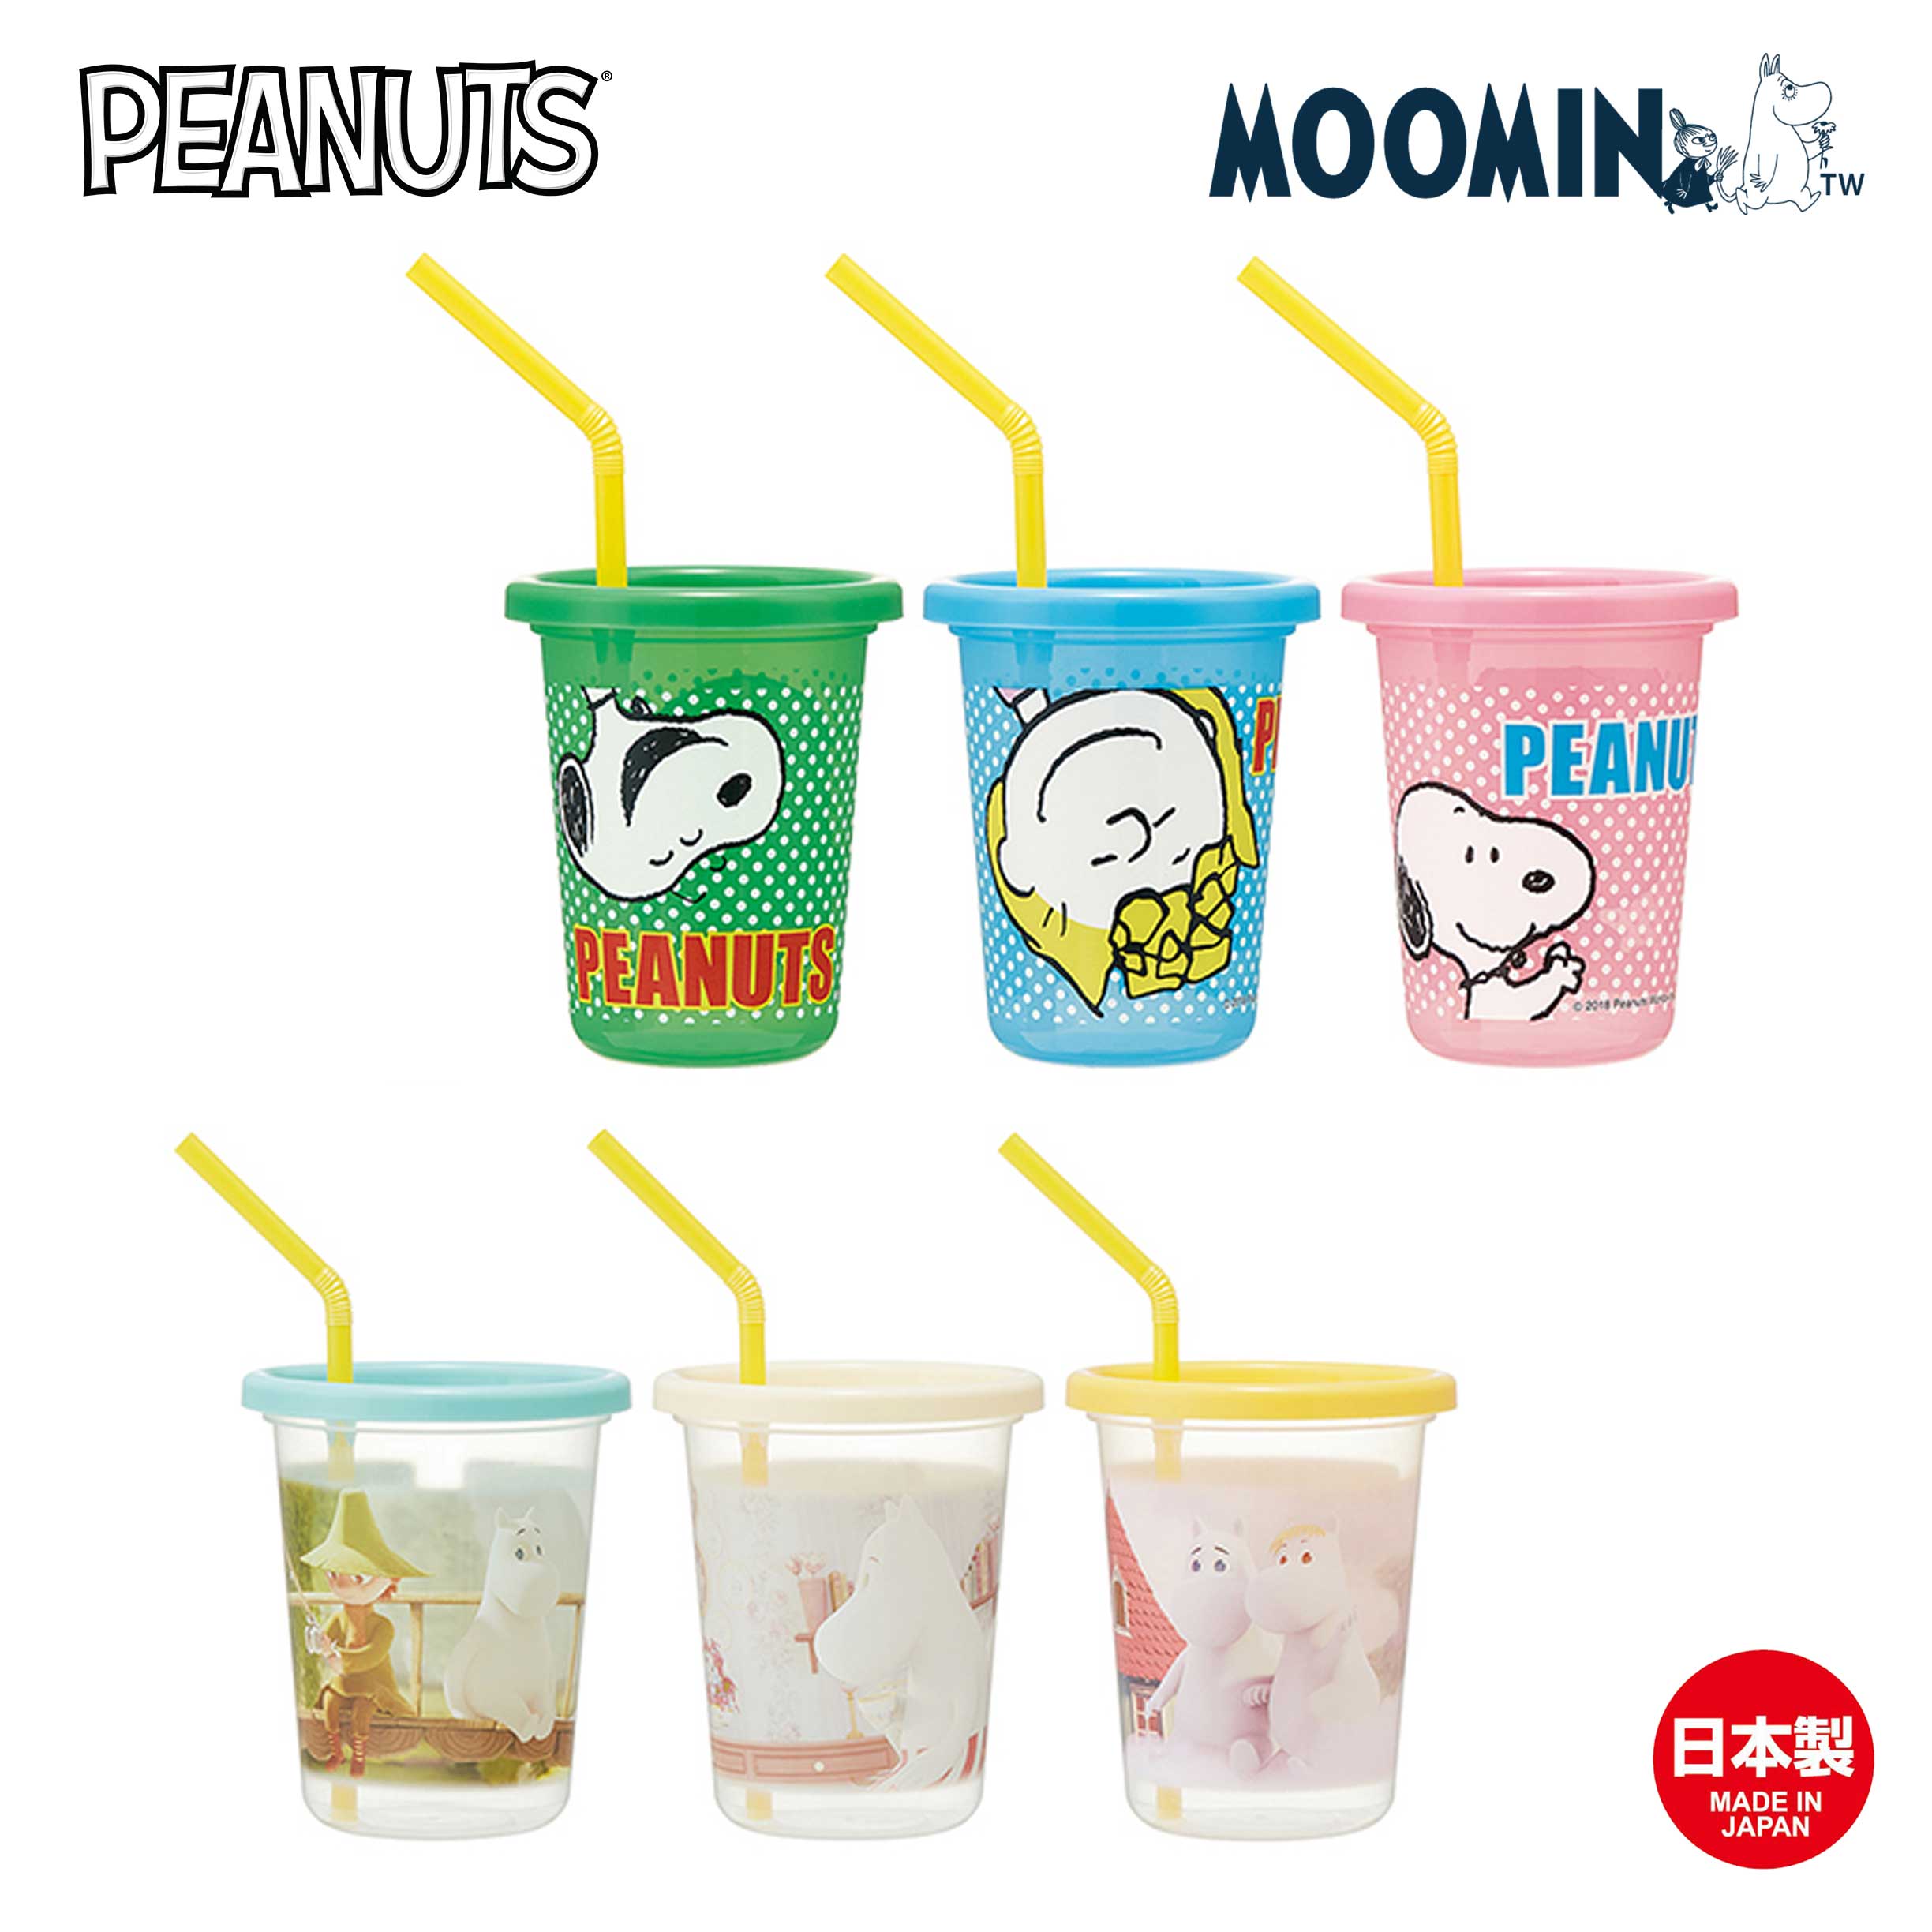 塑膠吸管杯組 3入 320ml-嚕嚕米 Moomin 史努比 SNOOPY PEANUTS SKATER 日本進口正版授權